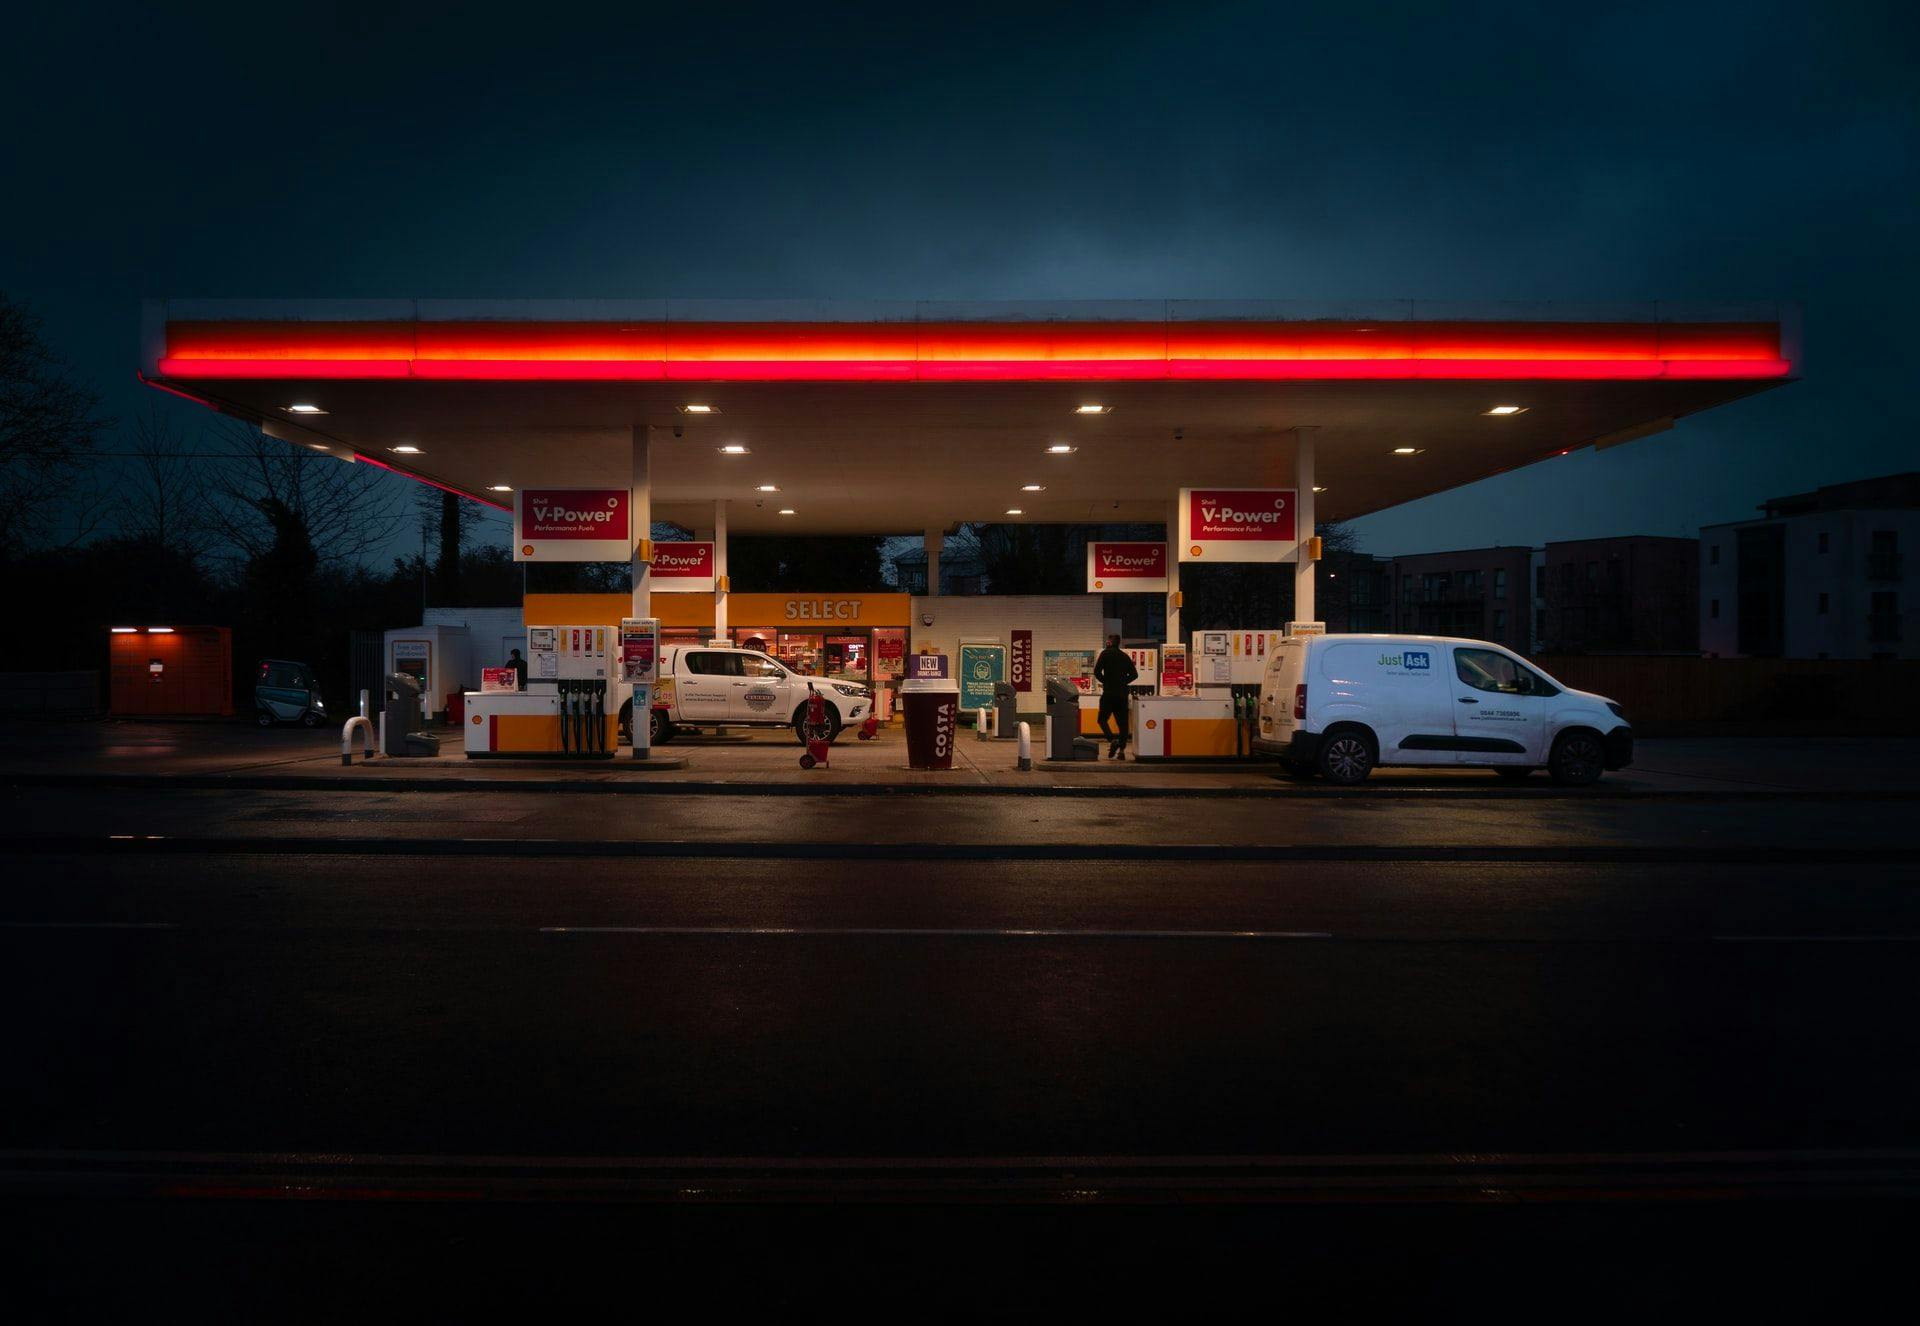 Цены за литр бензина в Люксембурге с начала 2021 года выросли на 20 центов